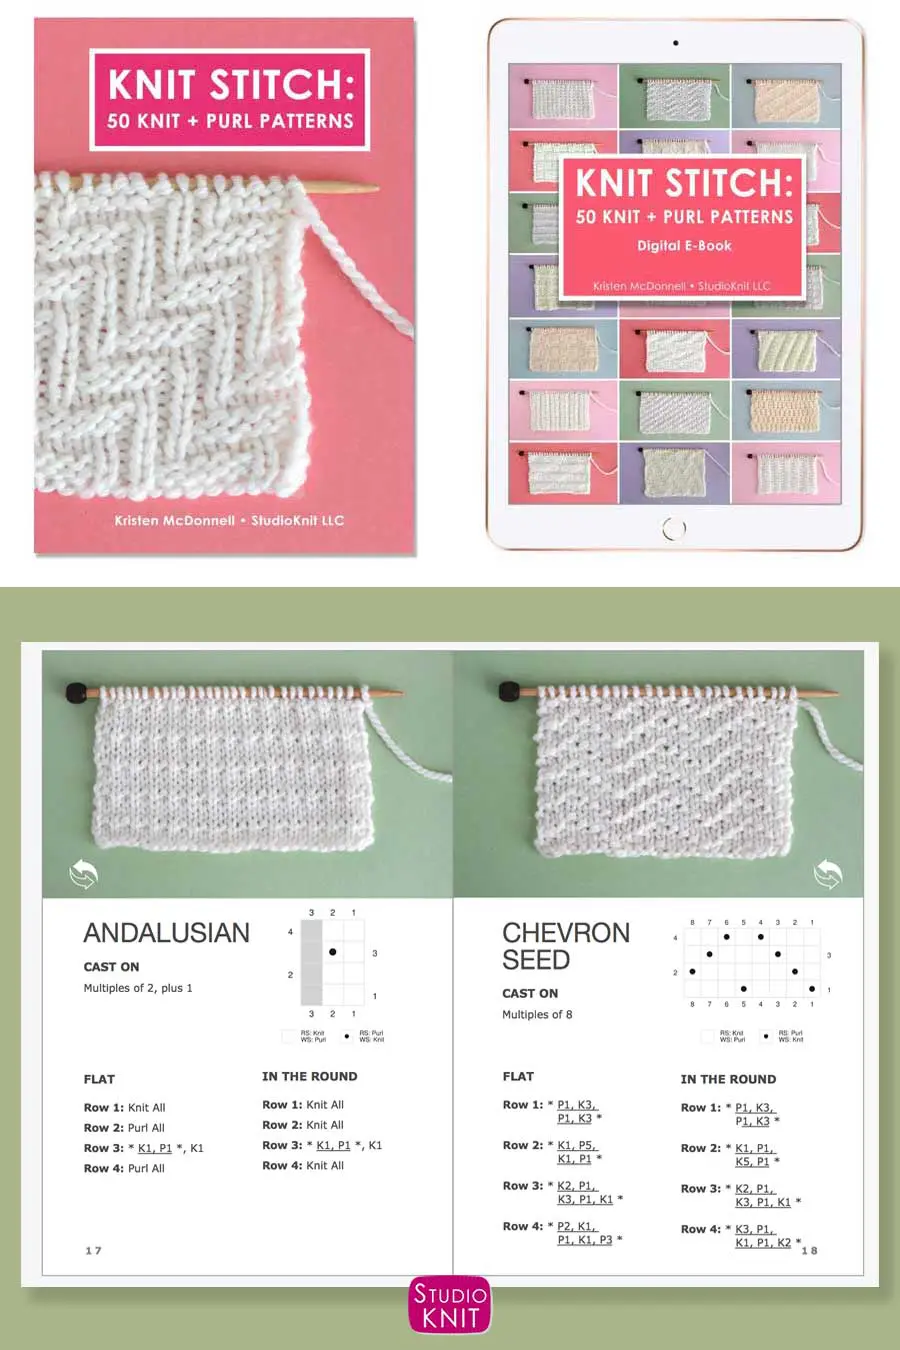 Knit Stitch Pattern Book with Andalusian Stitch Pattern by Studio Knit